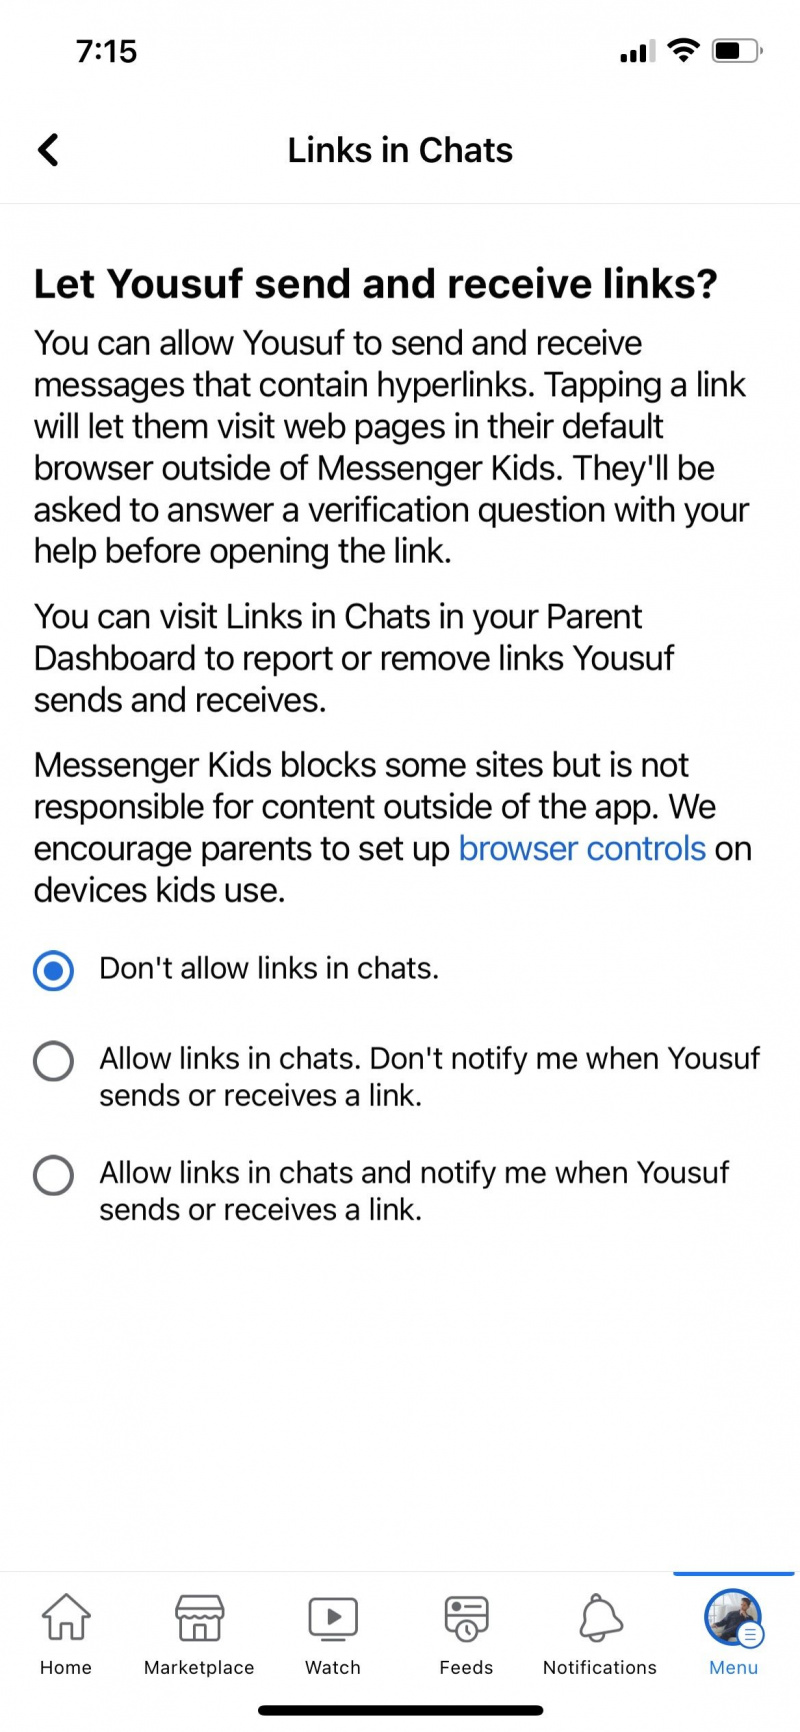   Skicka och ta emot länkar på Messenger Kids